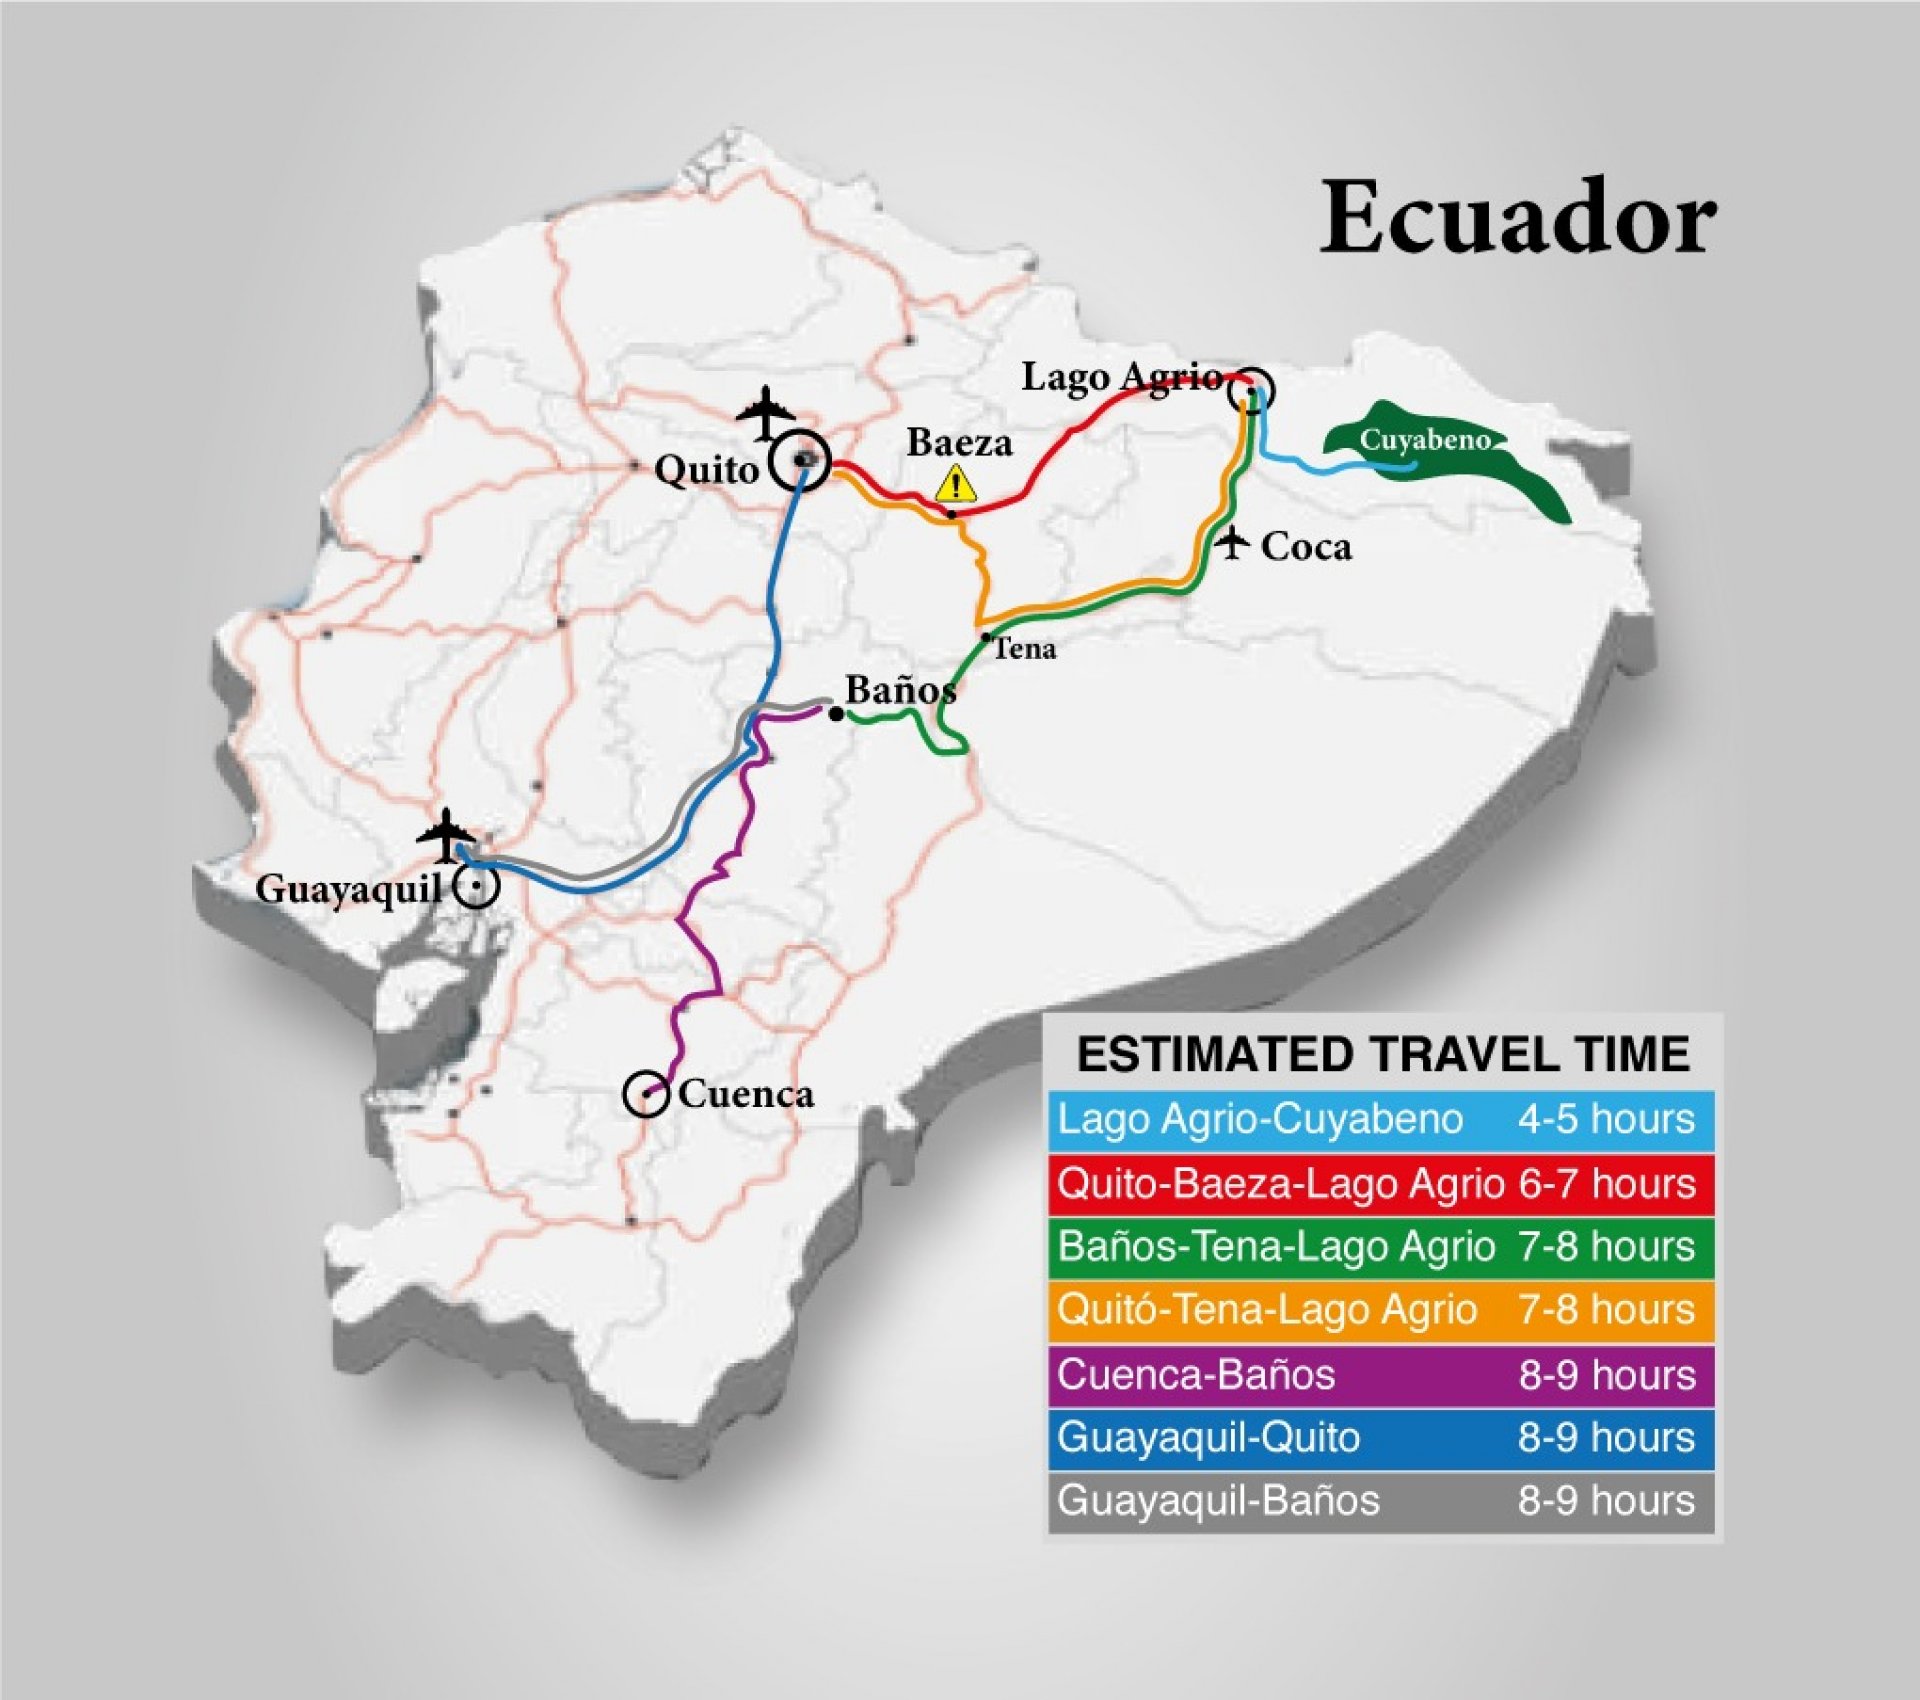 ¿Viajar en Auto al Cuyabeno(Lago Agrio) desde Guayaquil?